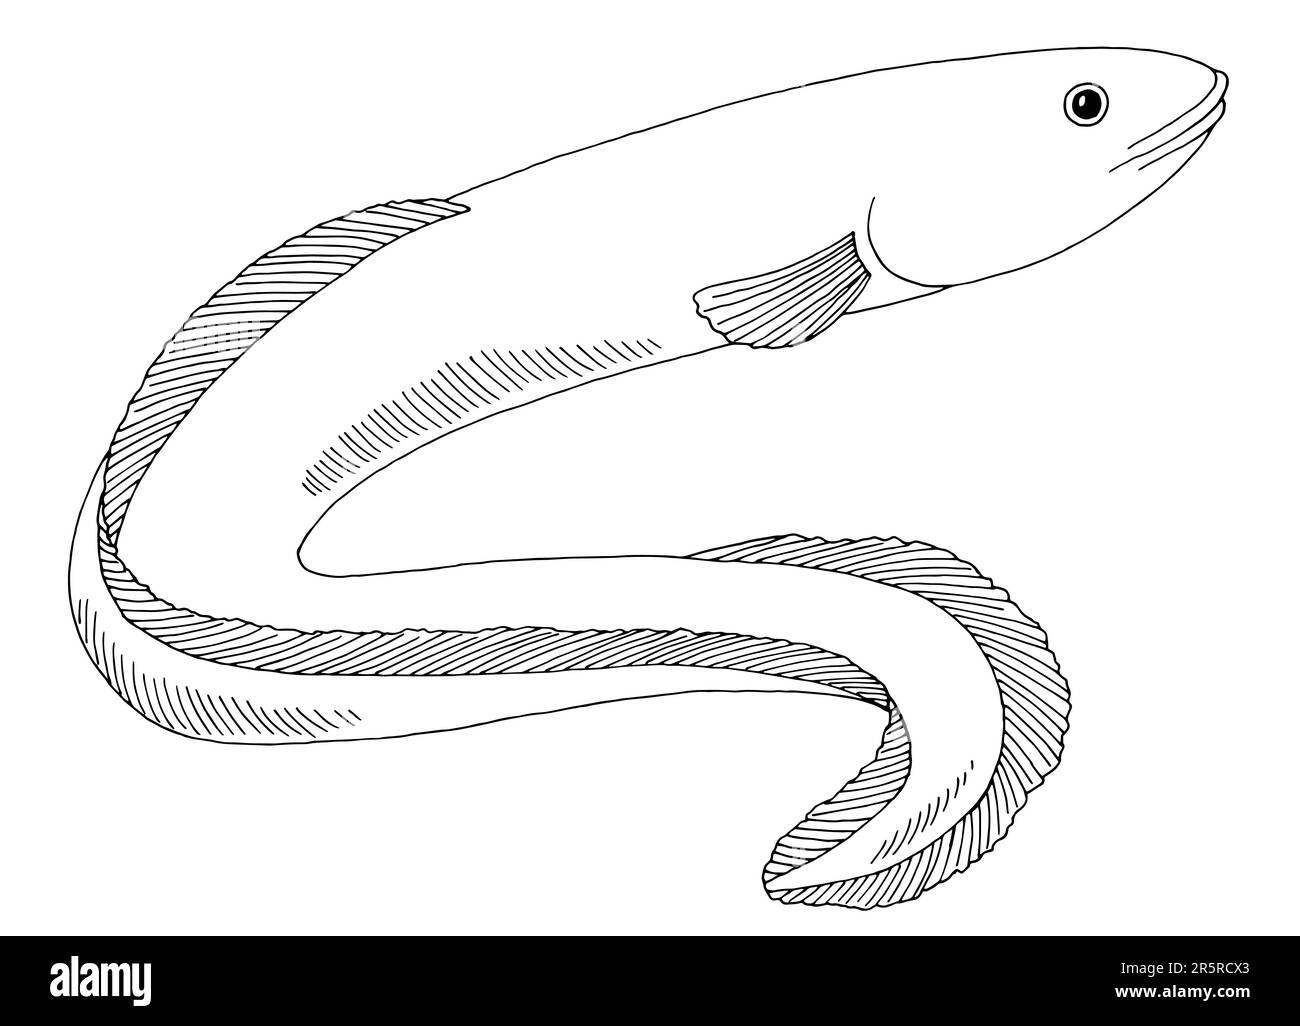 Acne pesce grafico nero bianco isolato vettore di illustrazione Illustrazione Vettoriale